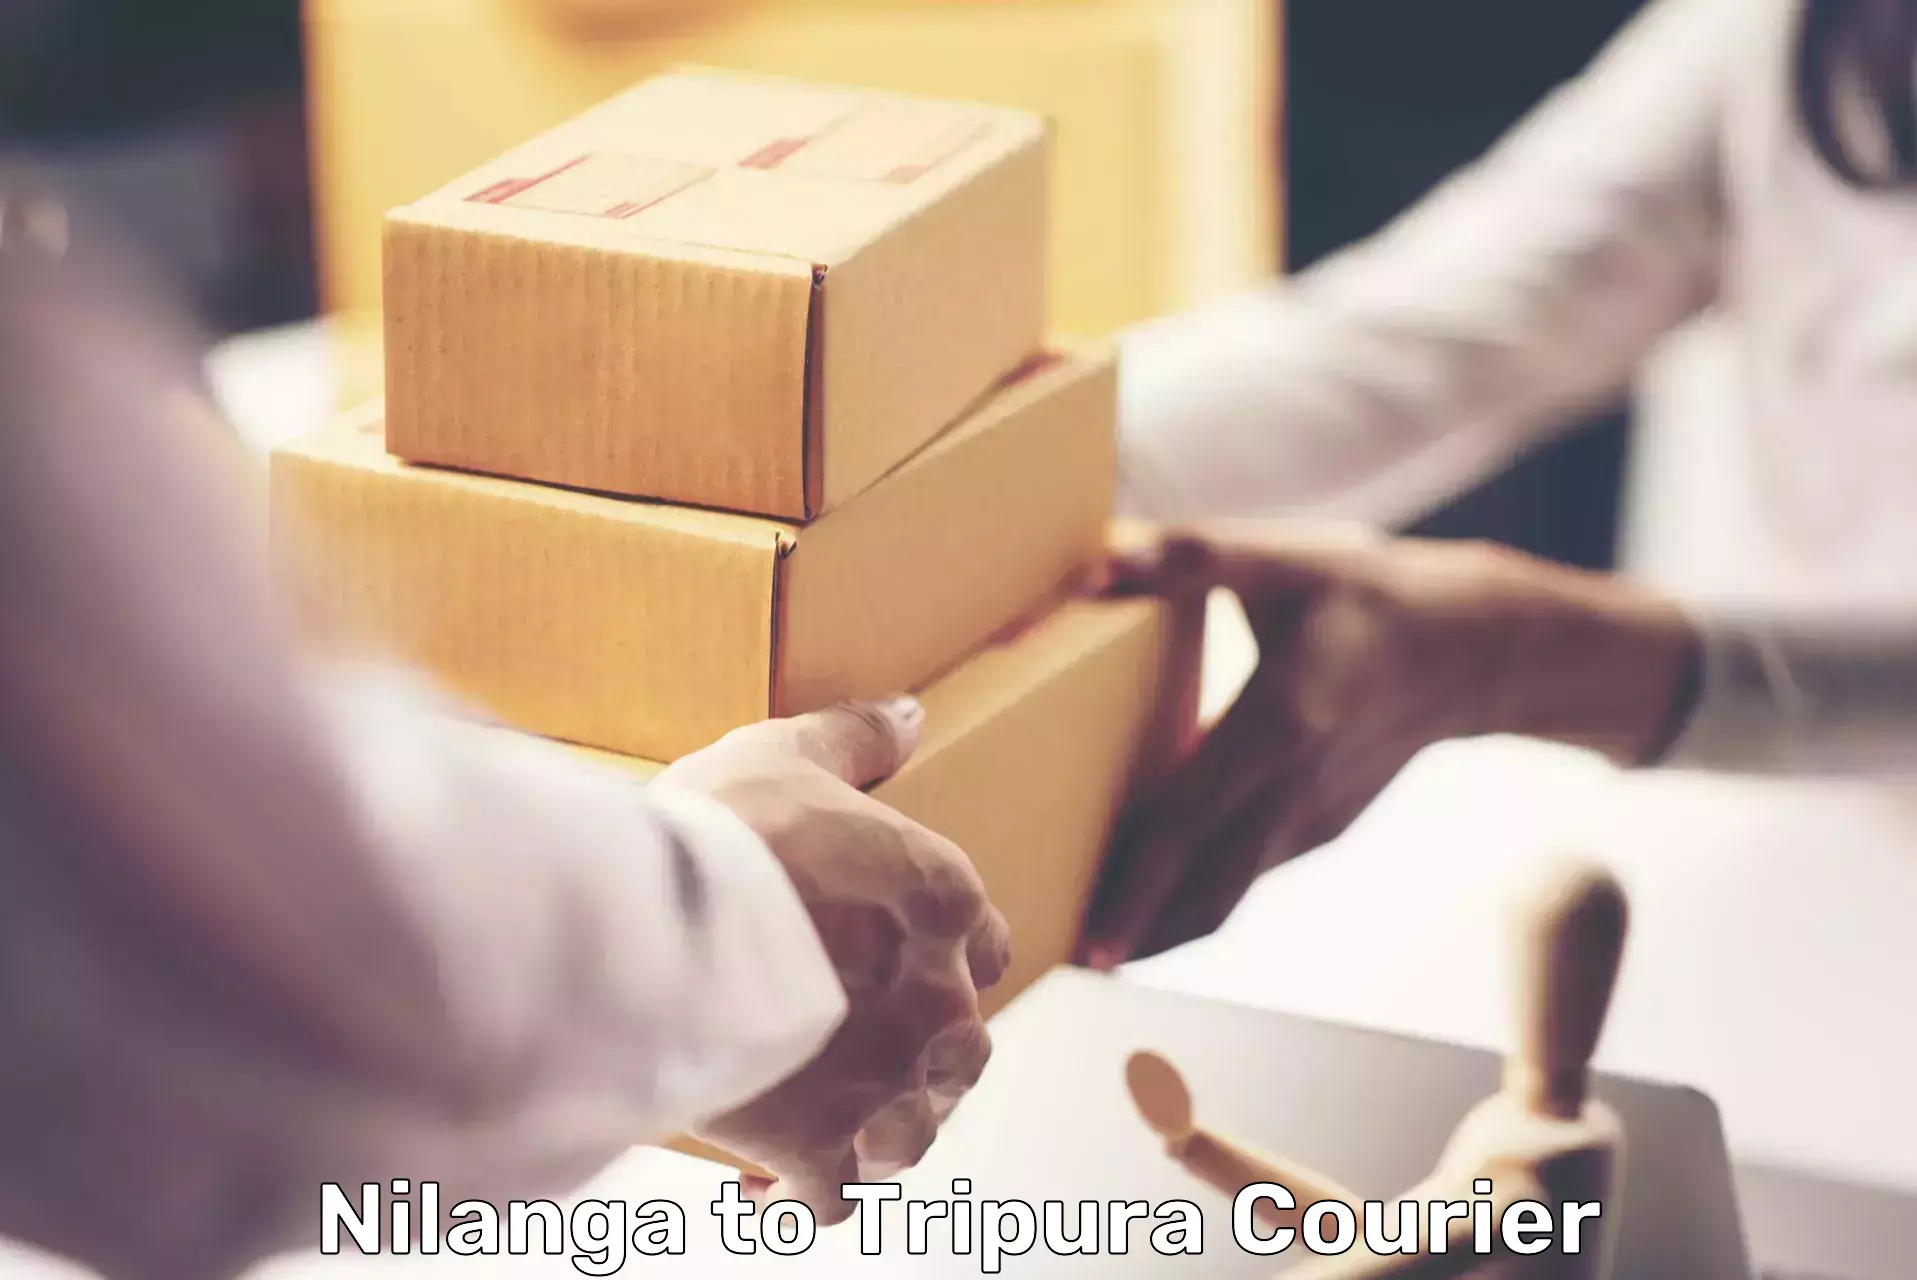 Express logistics service Nilanga to Ambassa